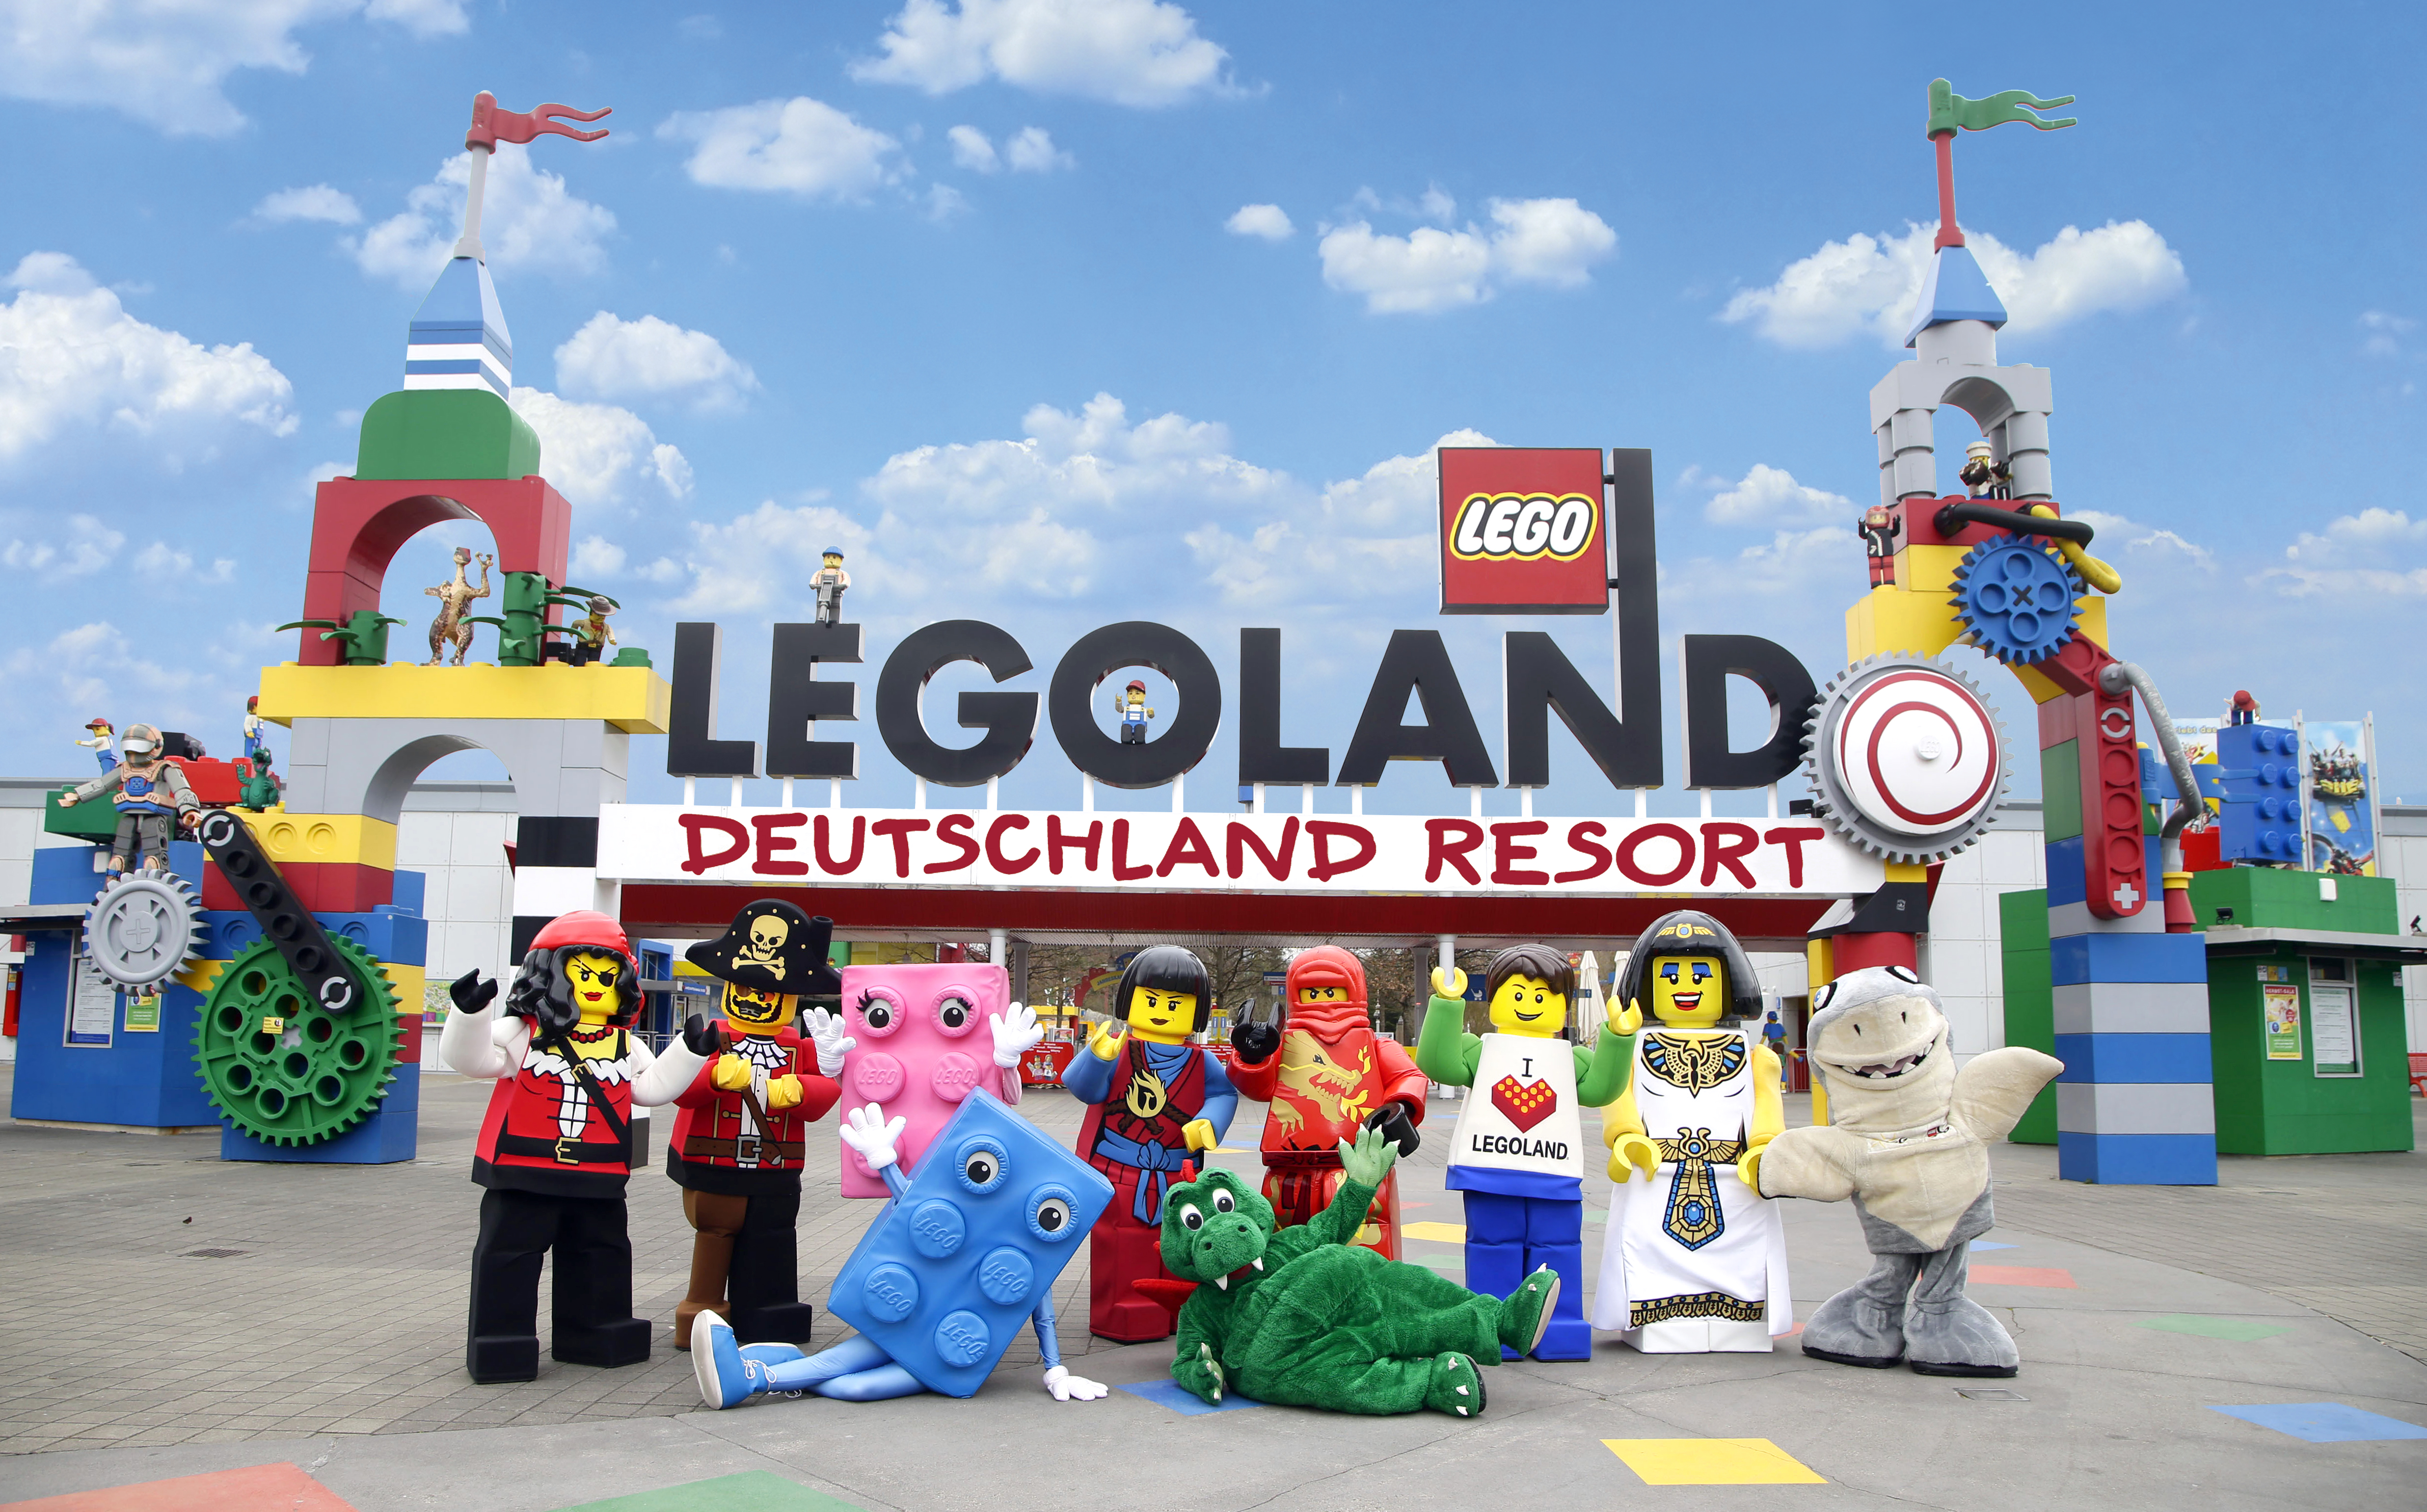 Pressebild der Legoland Deutschland GmbH, die das Eingangsportal mit Walking characters zeiht